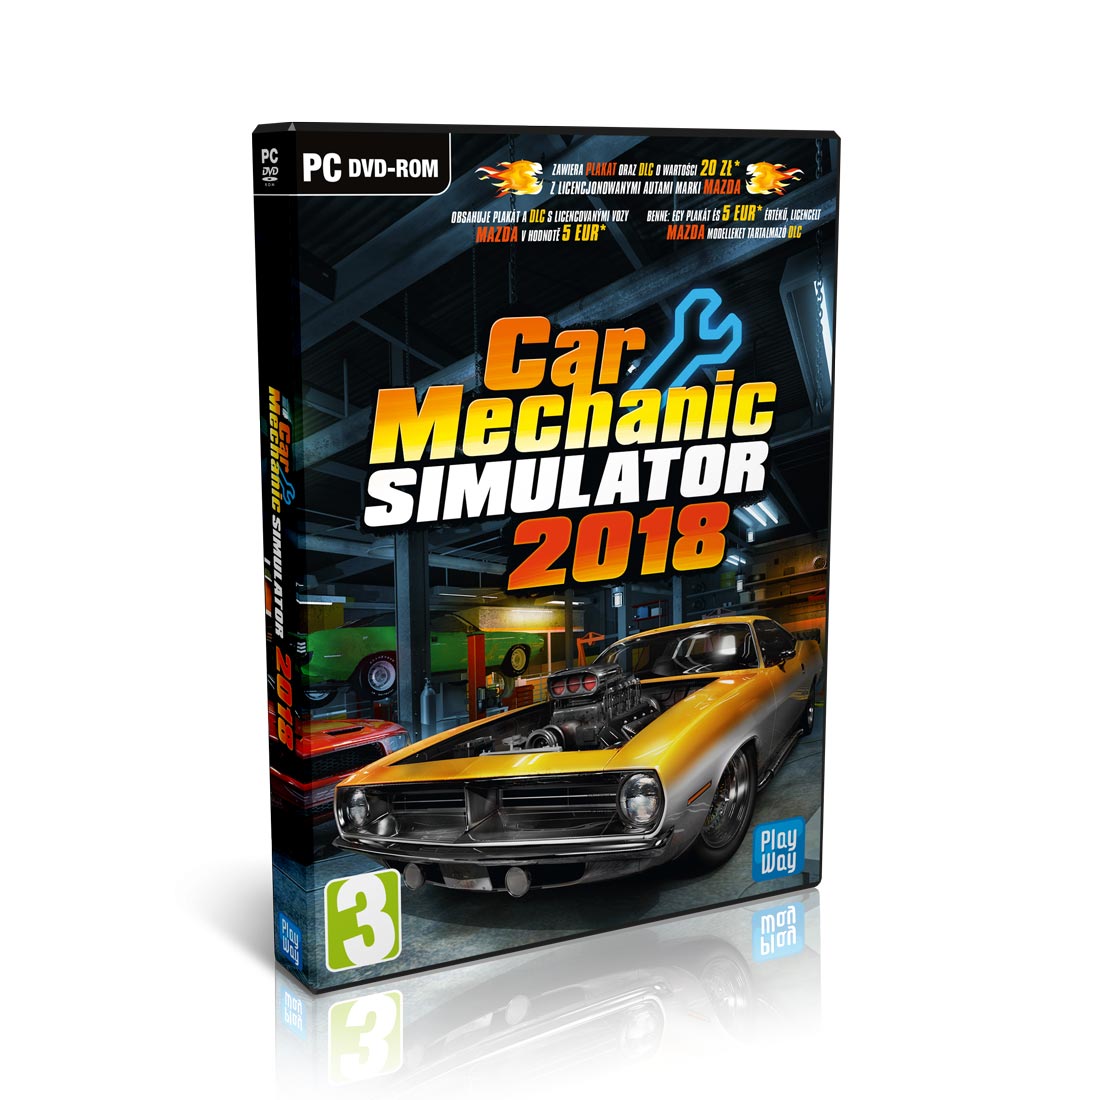 car mechanic simulator 2018 full free download